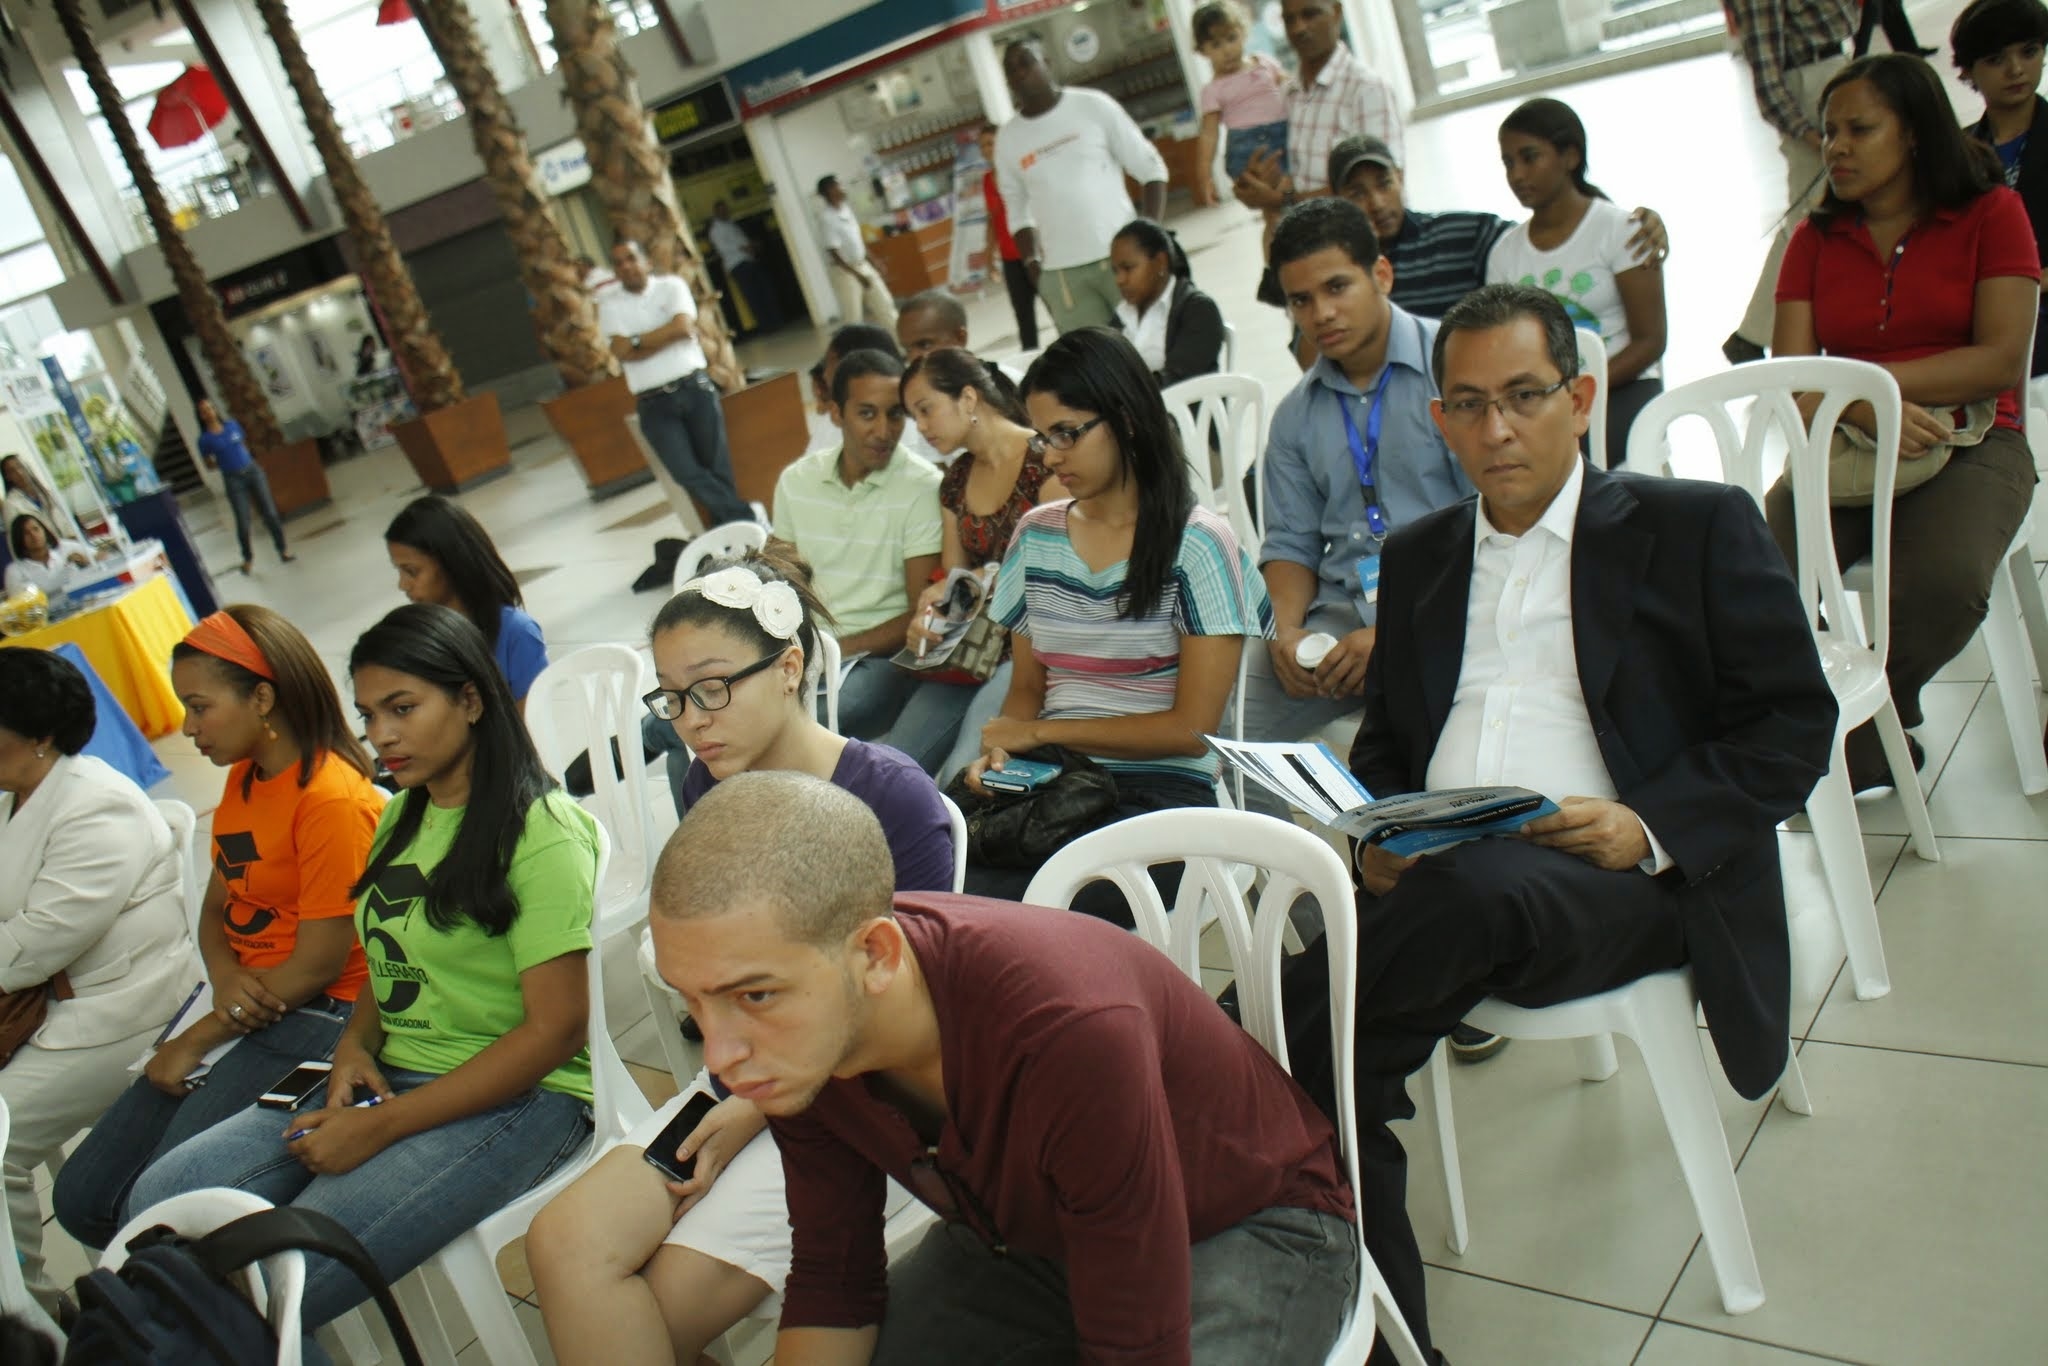 Los participantes, además, pudieron disfrutar de diversas charlas; El evento fue totalmente gratis para el público asistente.